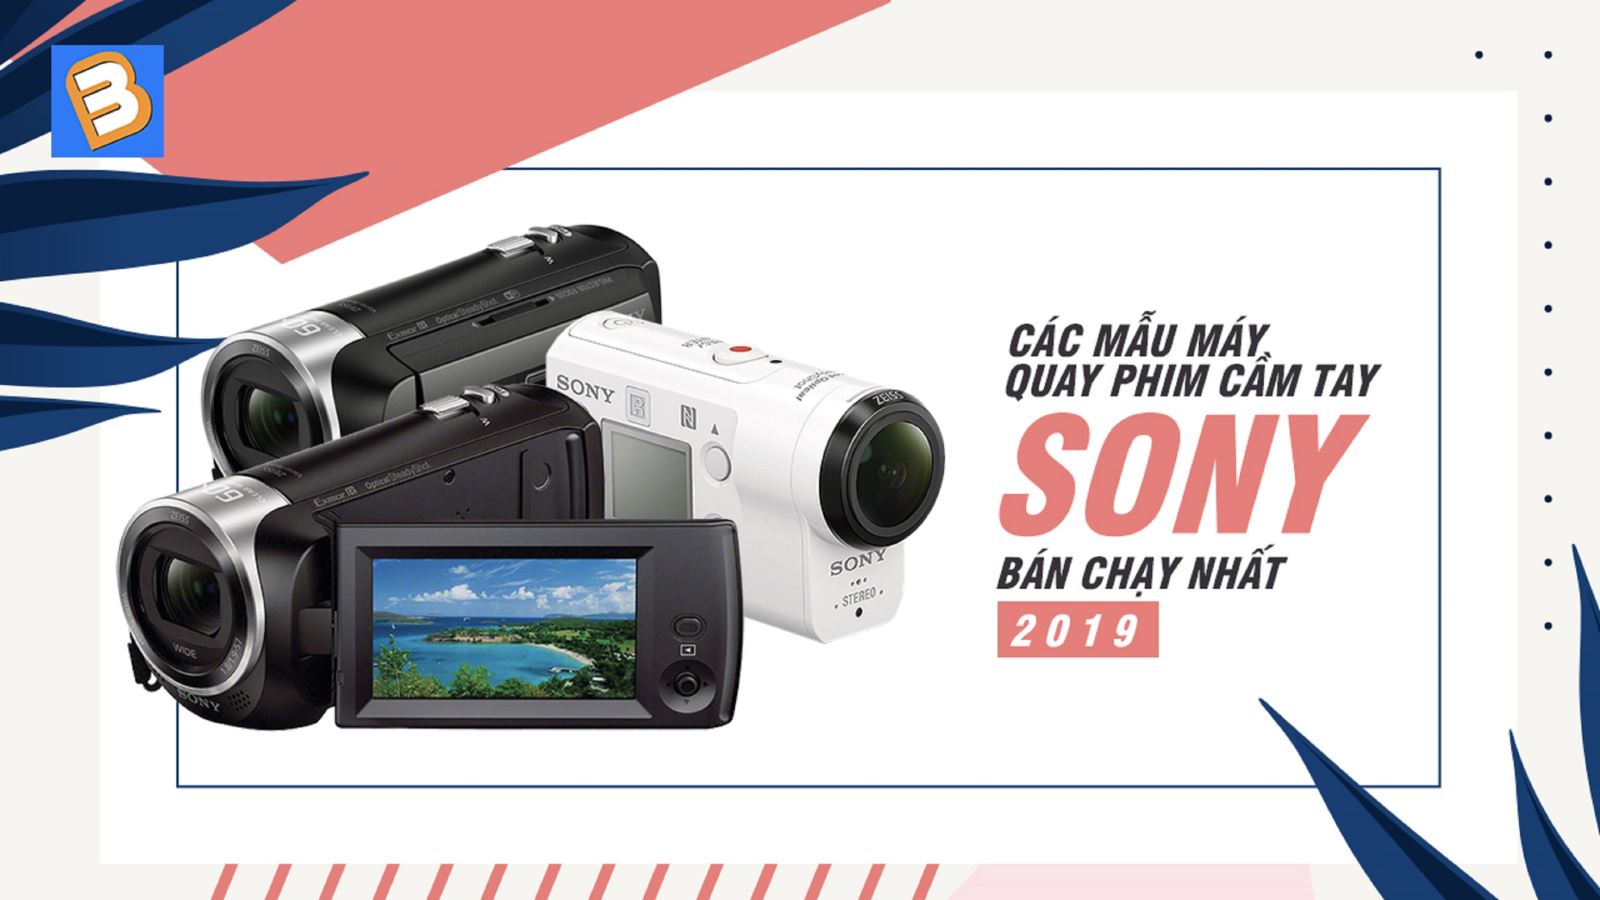 Các mẫu máy quay phim cầm tay Sony bán chạy nhất 2019